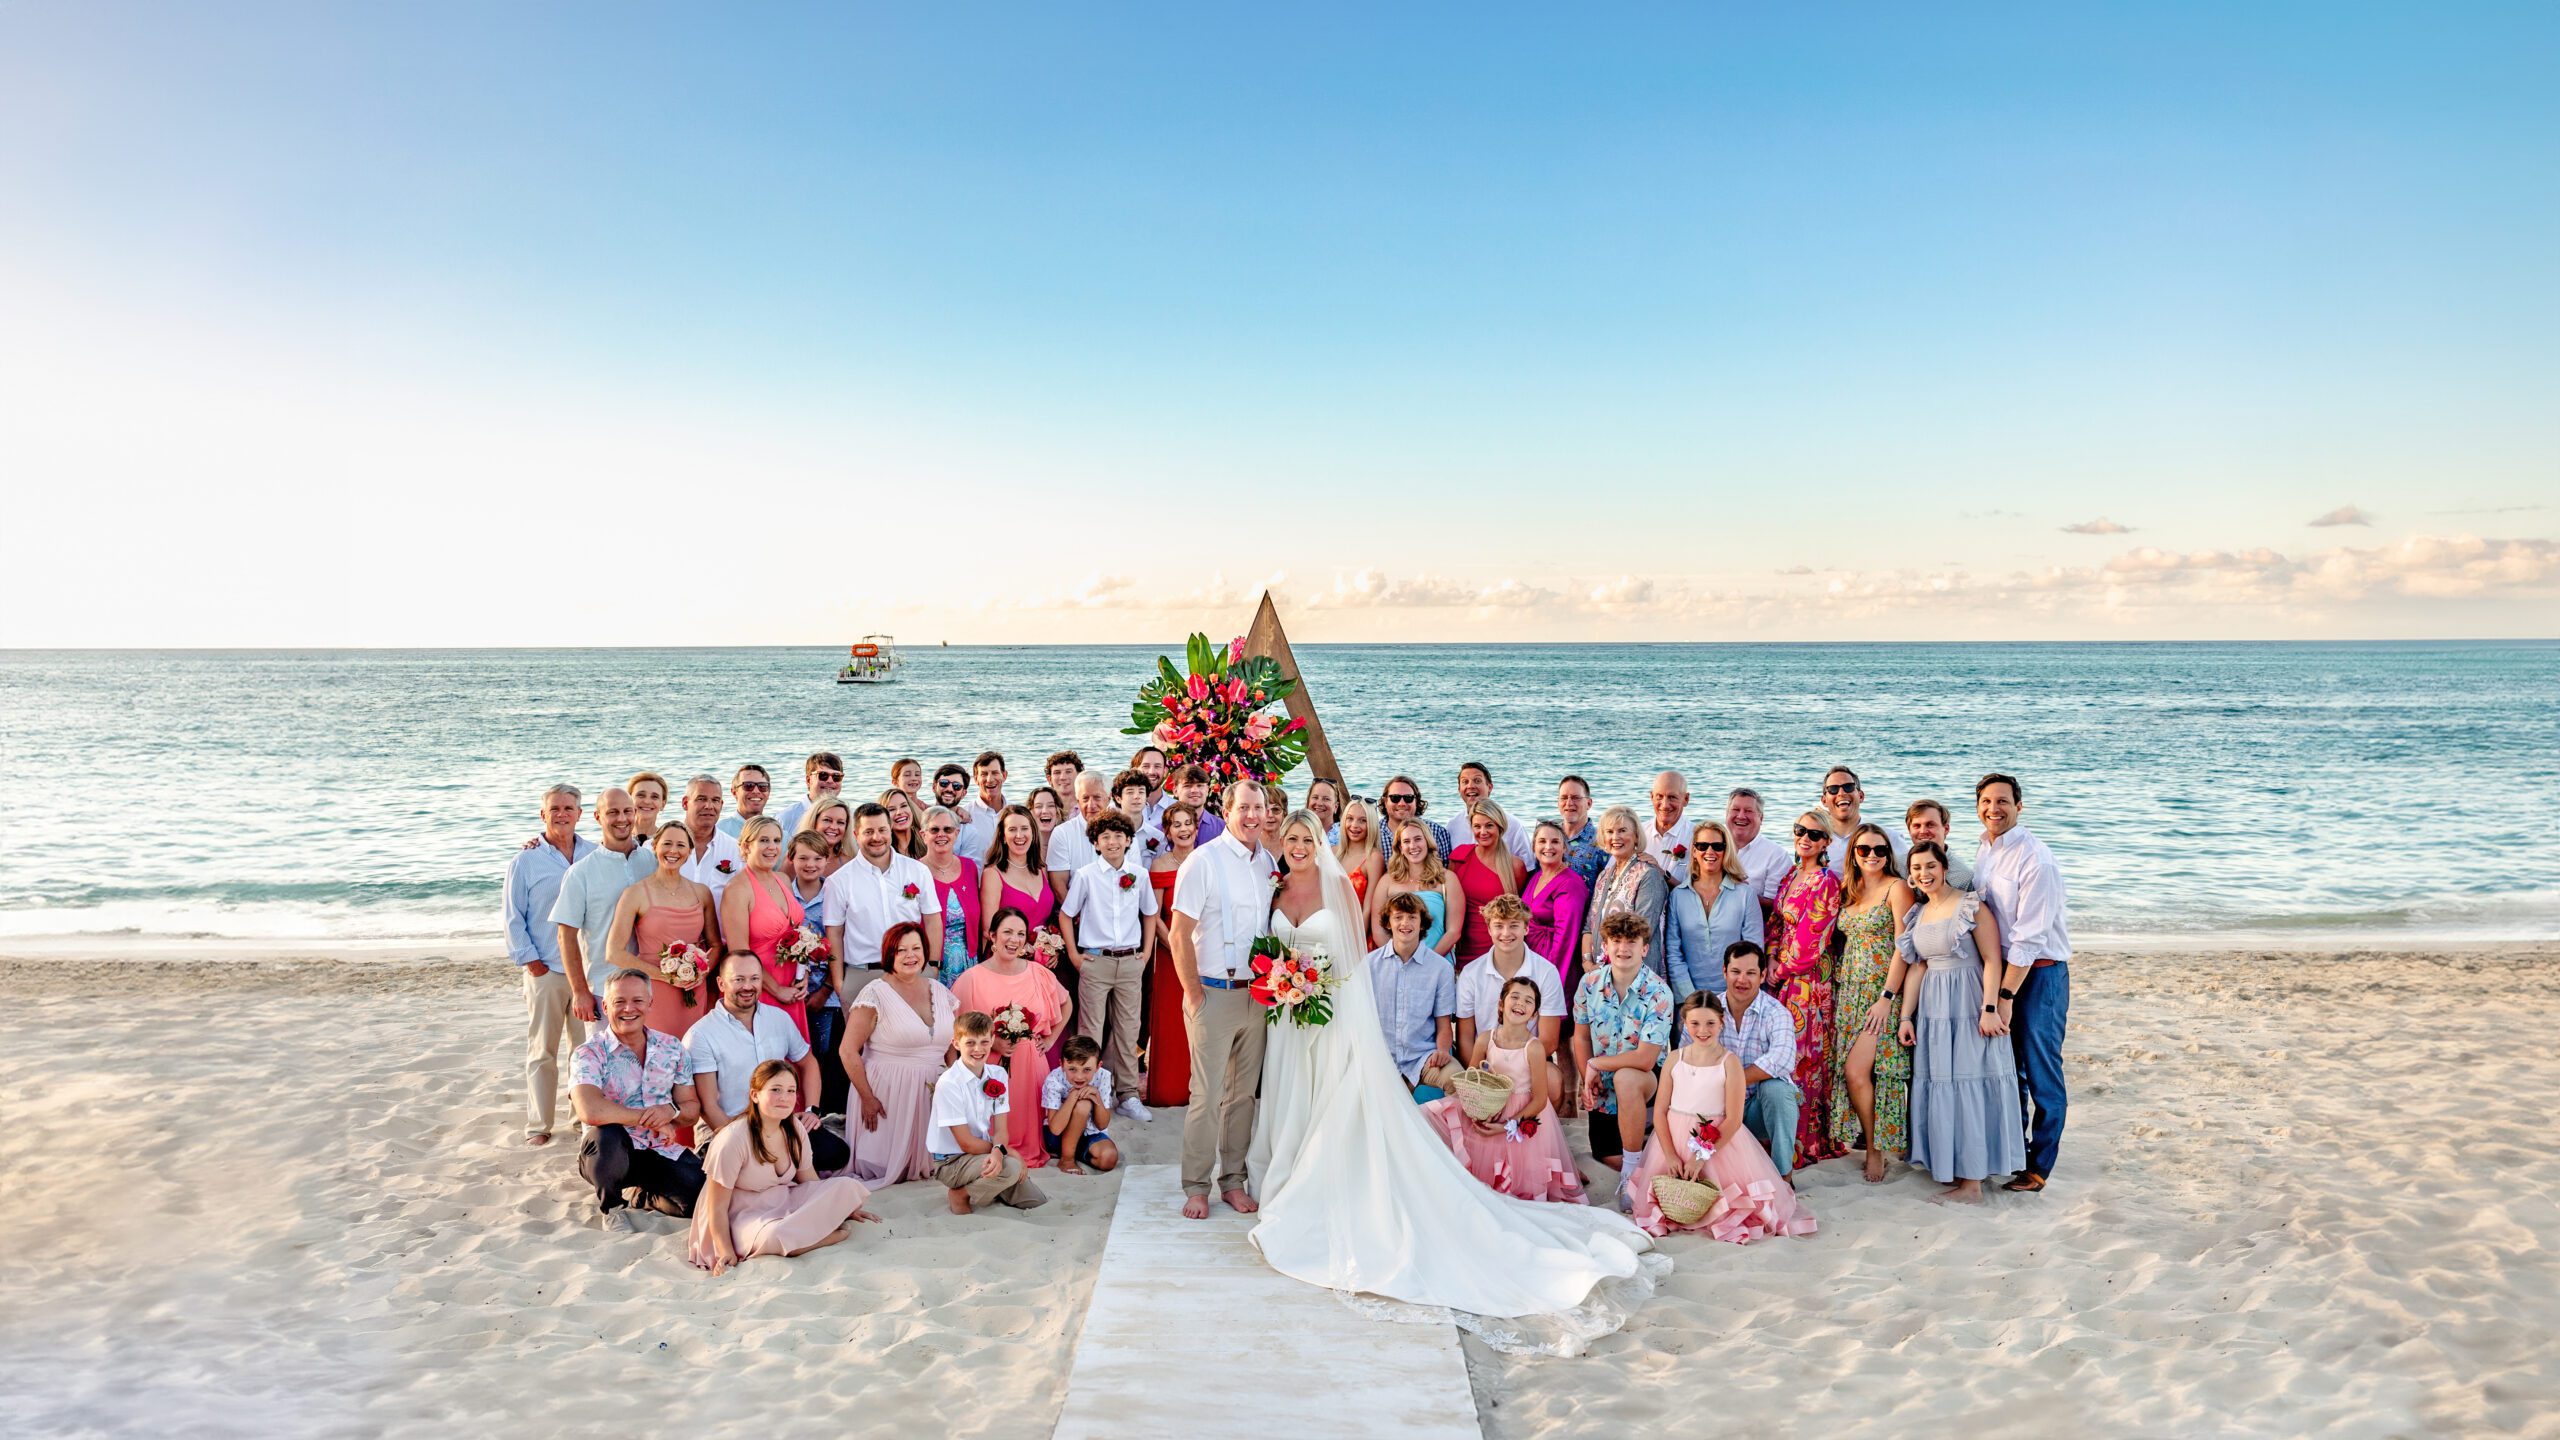 beaches turks and caicos destination wedding photographer shoreshotz